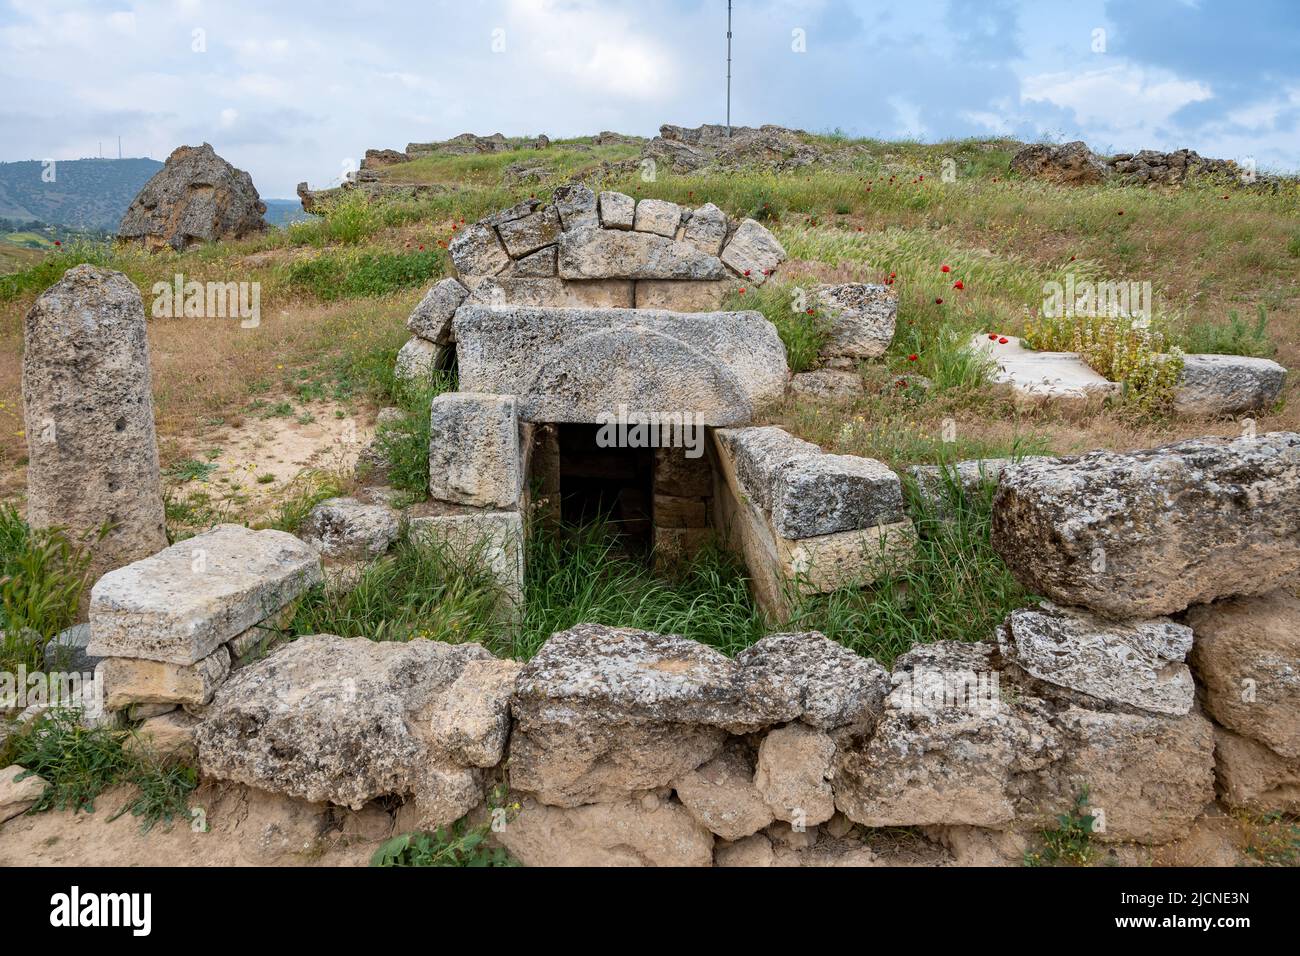 Blocs de pierre d'une nécropole ancienne à Hiérapolis. Pamukkale, Türkiye. Banque D'Images